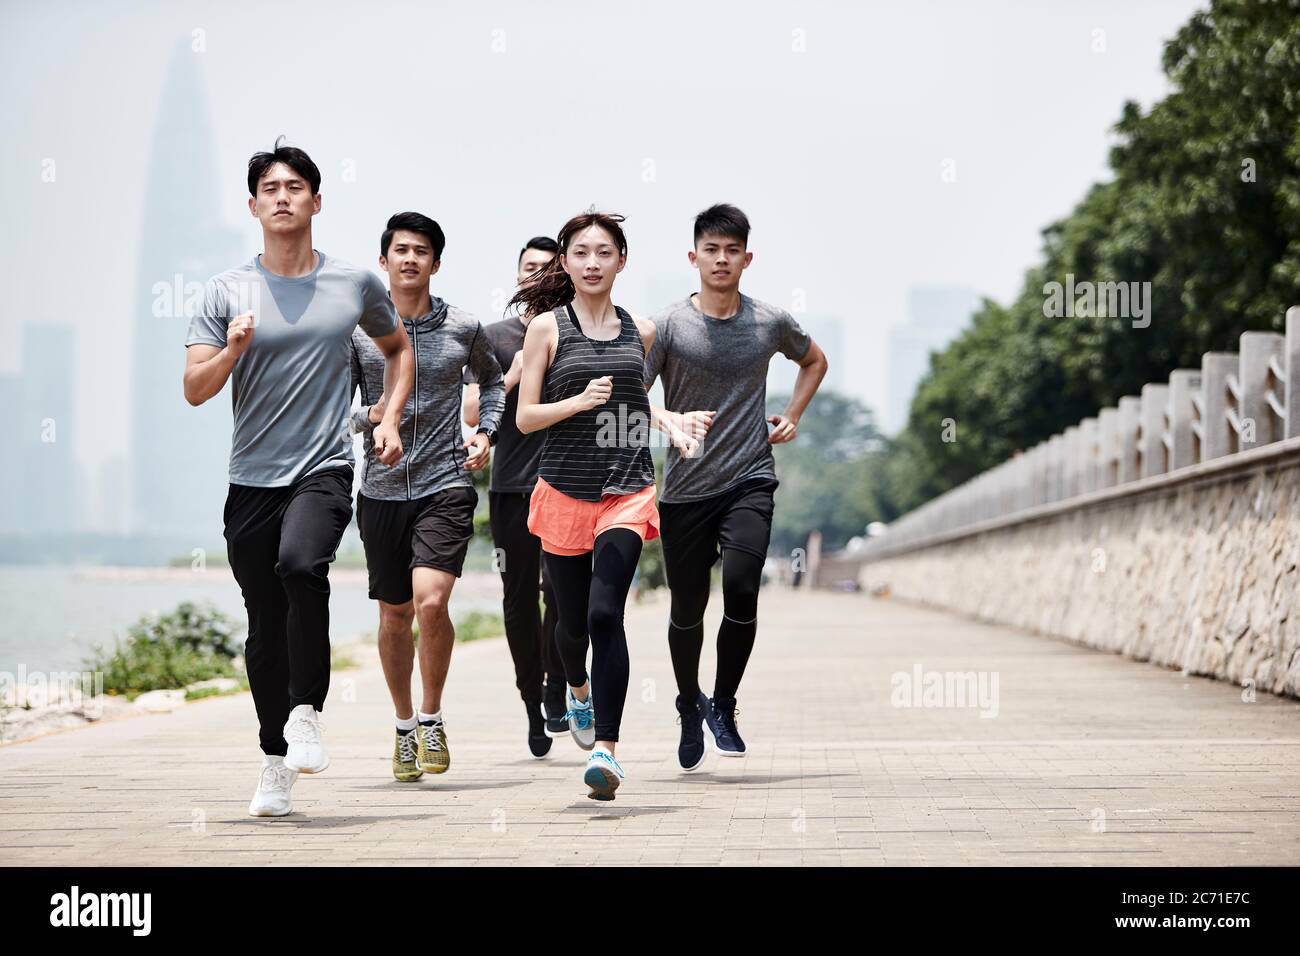 gruppo di cinque giovani adulti asiatici uomini e donne che si allenano all'aperto Foto Stock